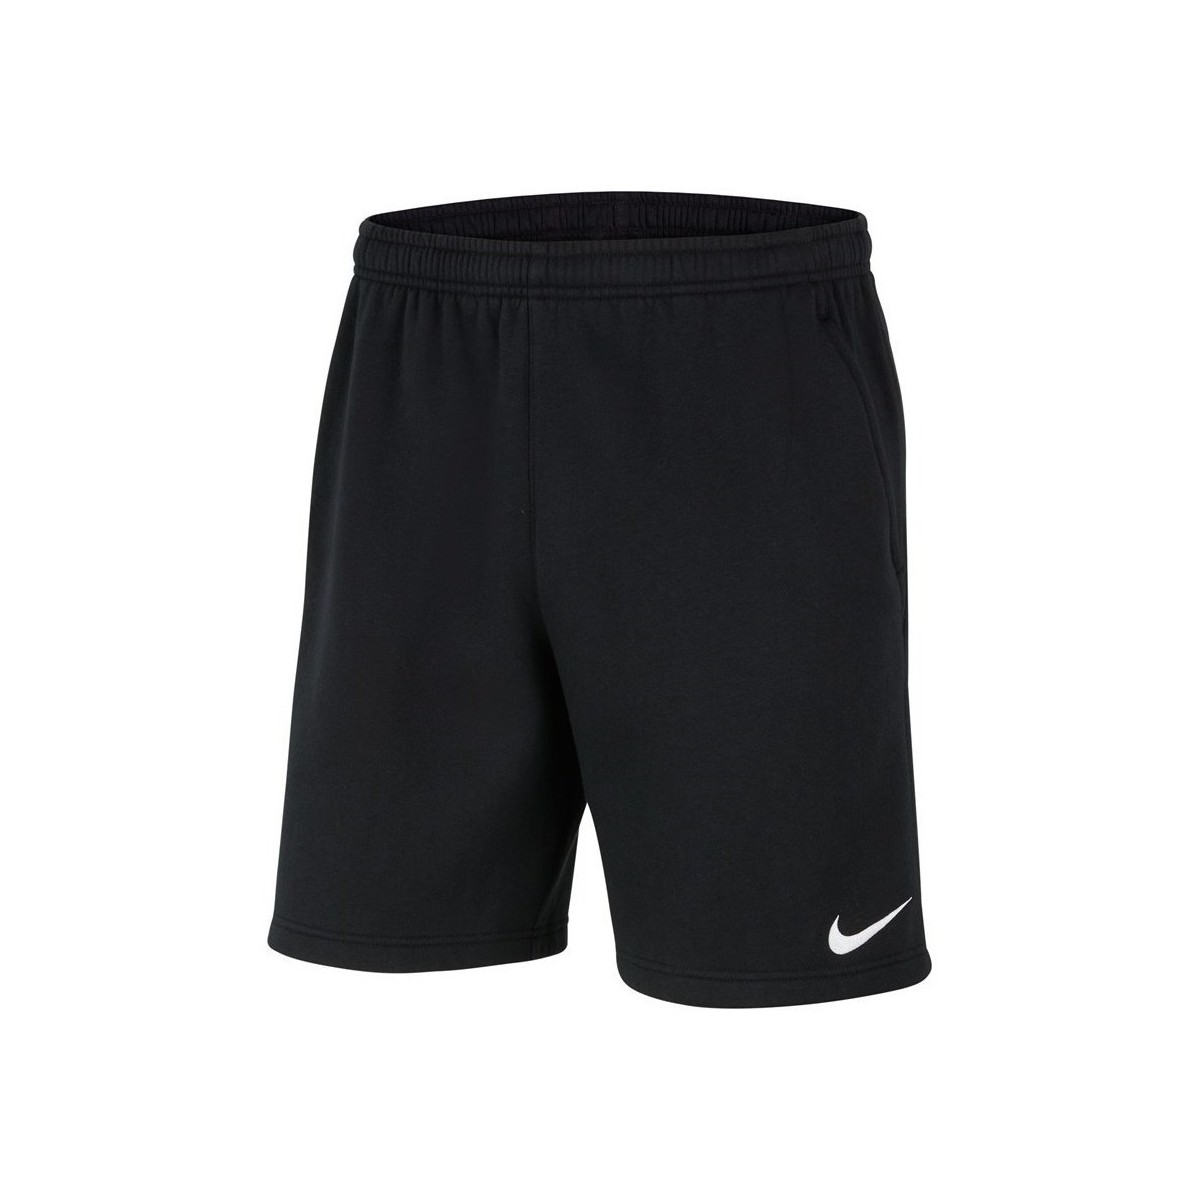 Textil Muži Tříčtvrteční kalhoty Nike Park 20 Fleece Černá